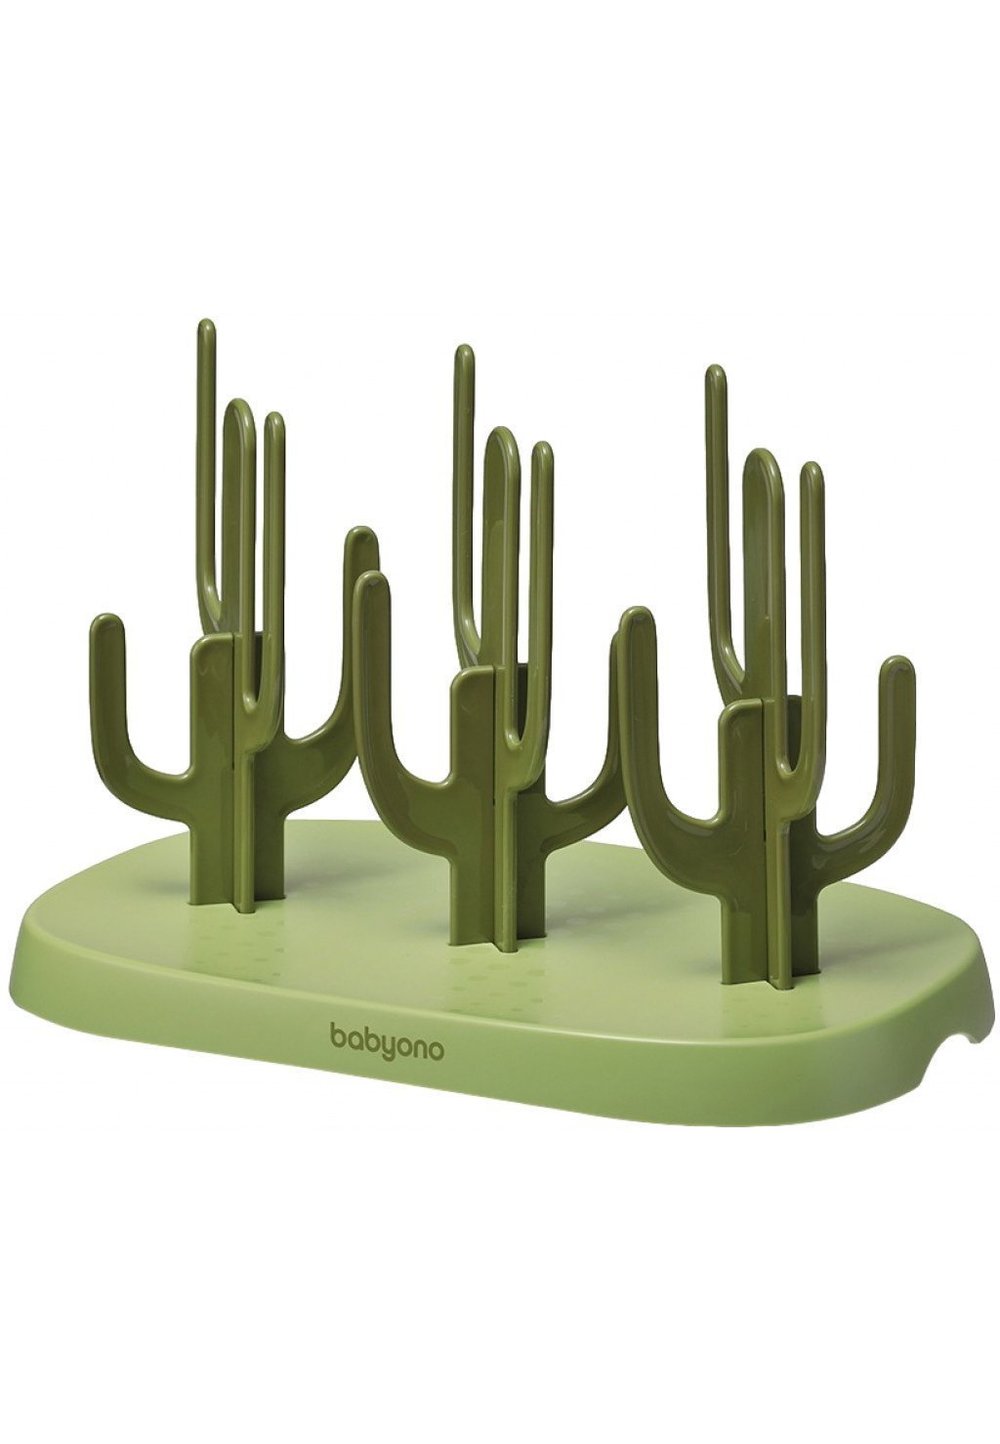 Suport pentru biberoane, Cactus, verde Baby ono imagine noua